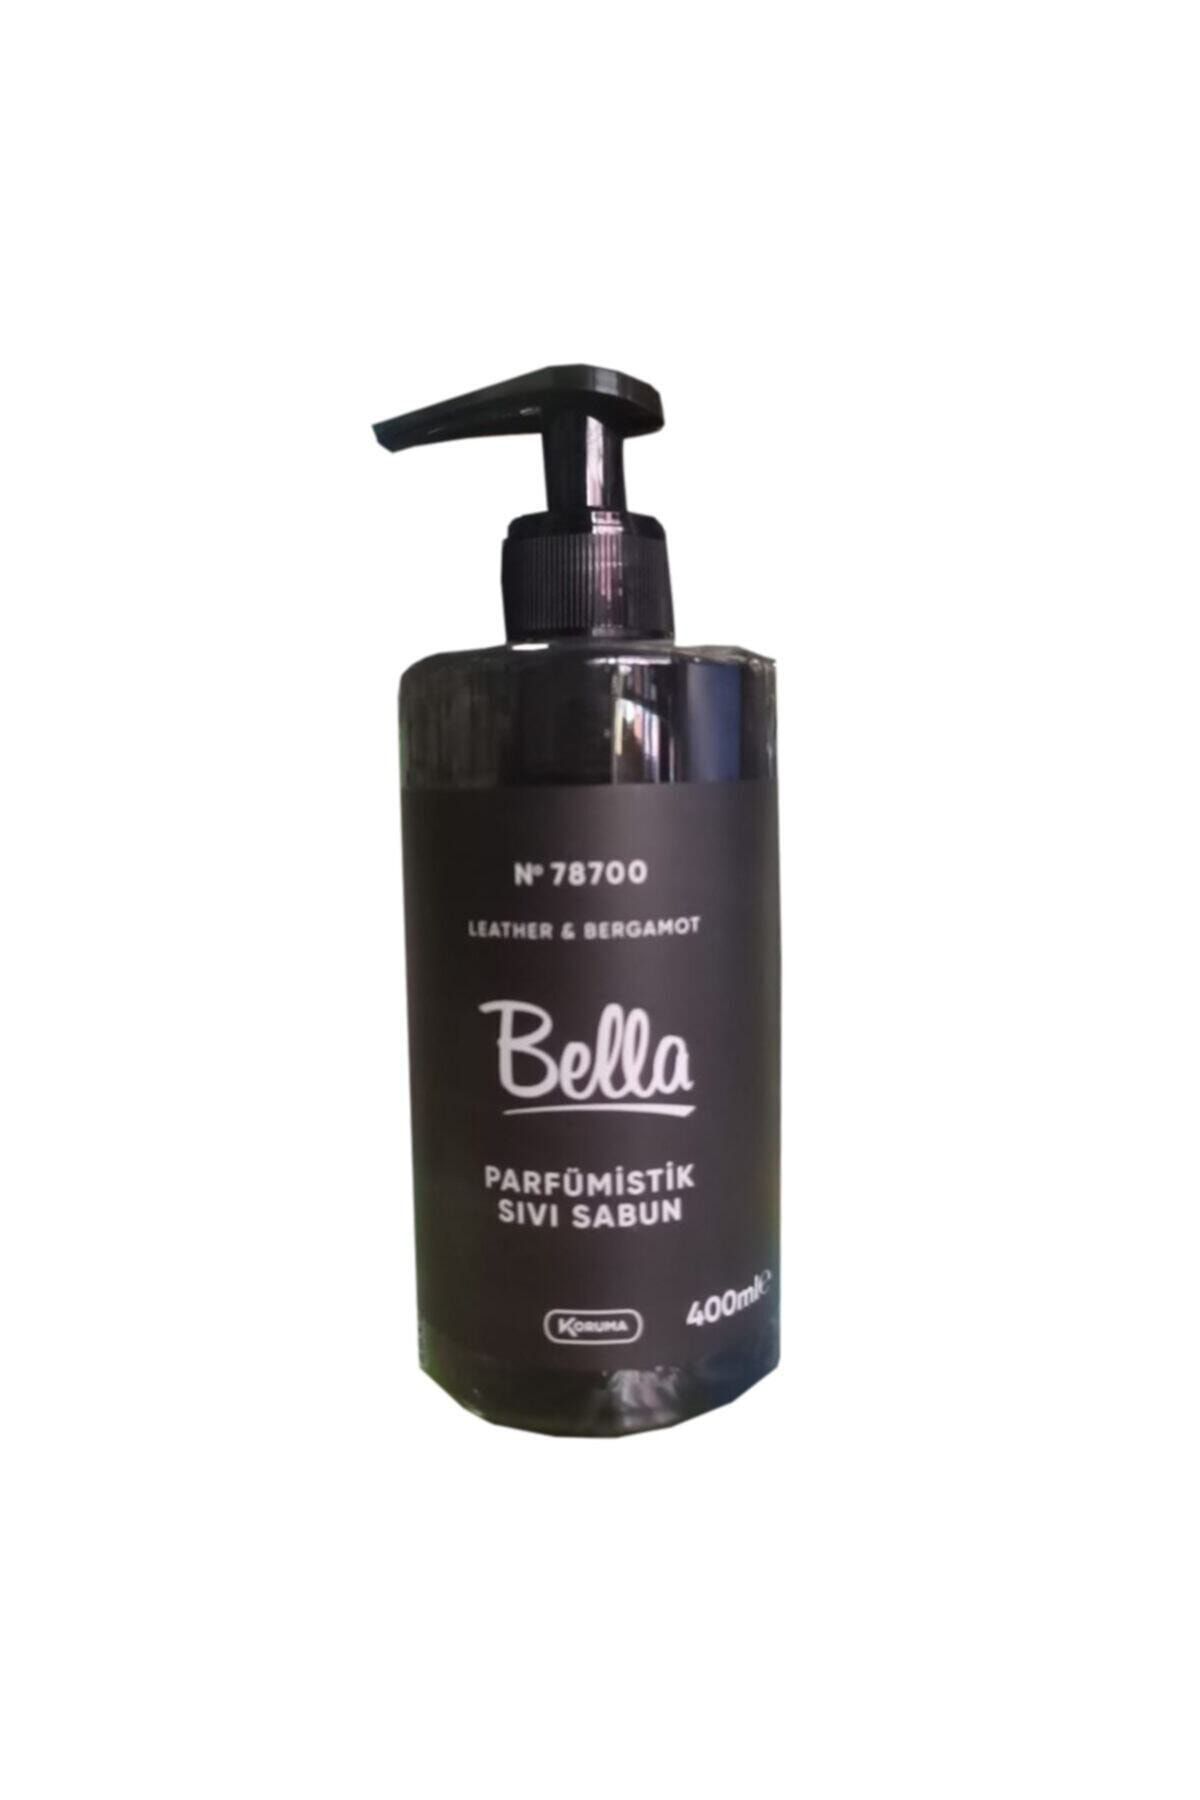 Bella Sıvı Sabun 400 ml Bergamot Parfümistik